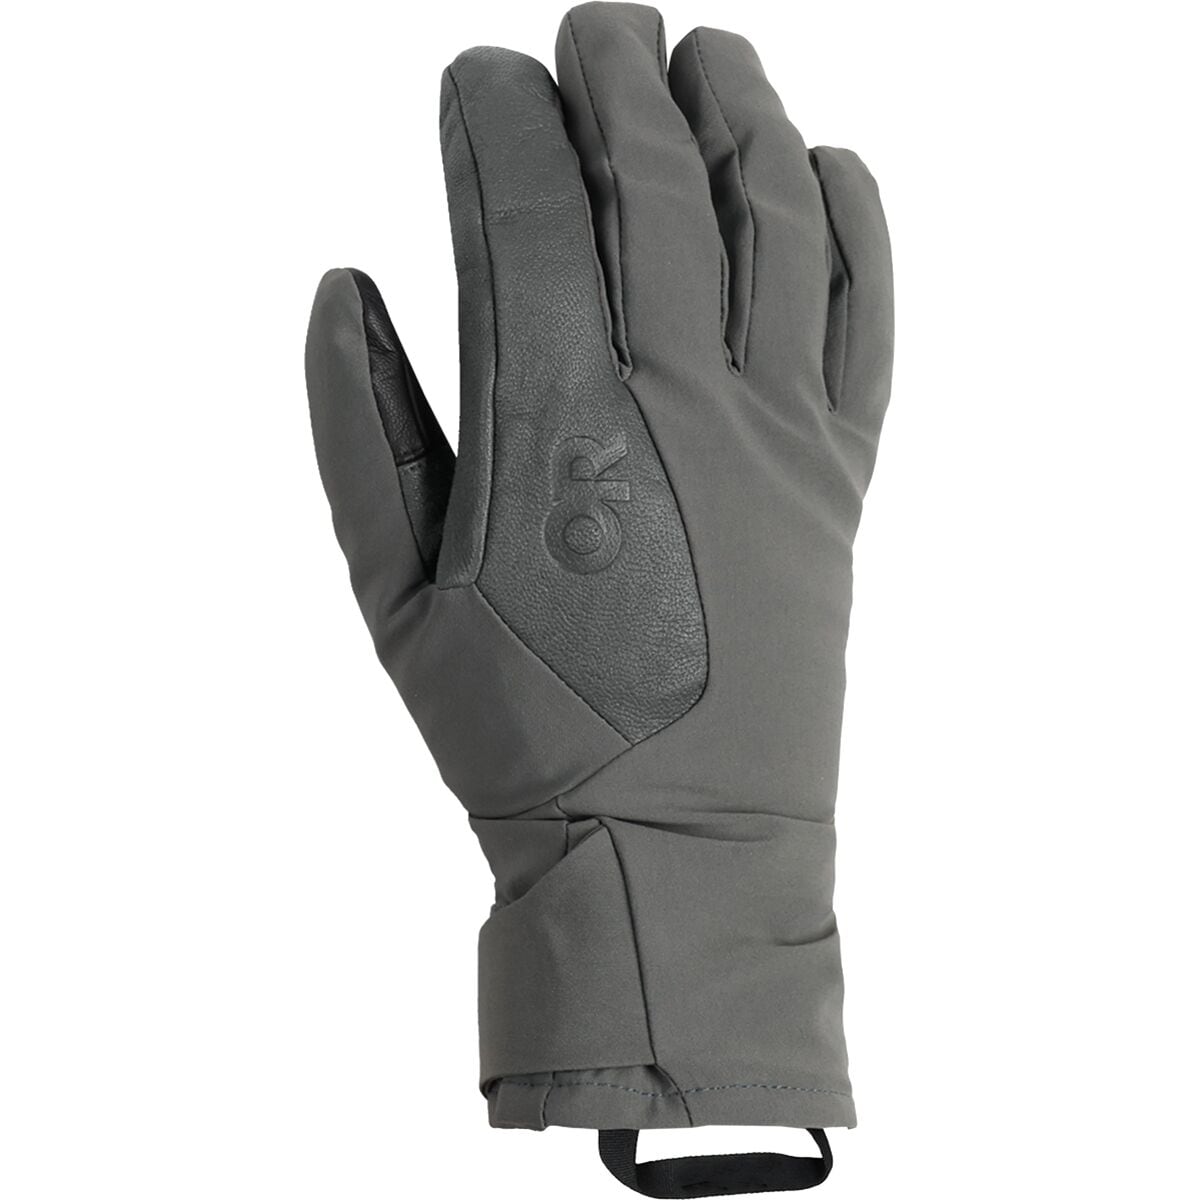 Outdoor Research Sureshot Pro Glove - Men's Charcoal